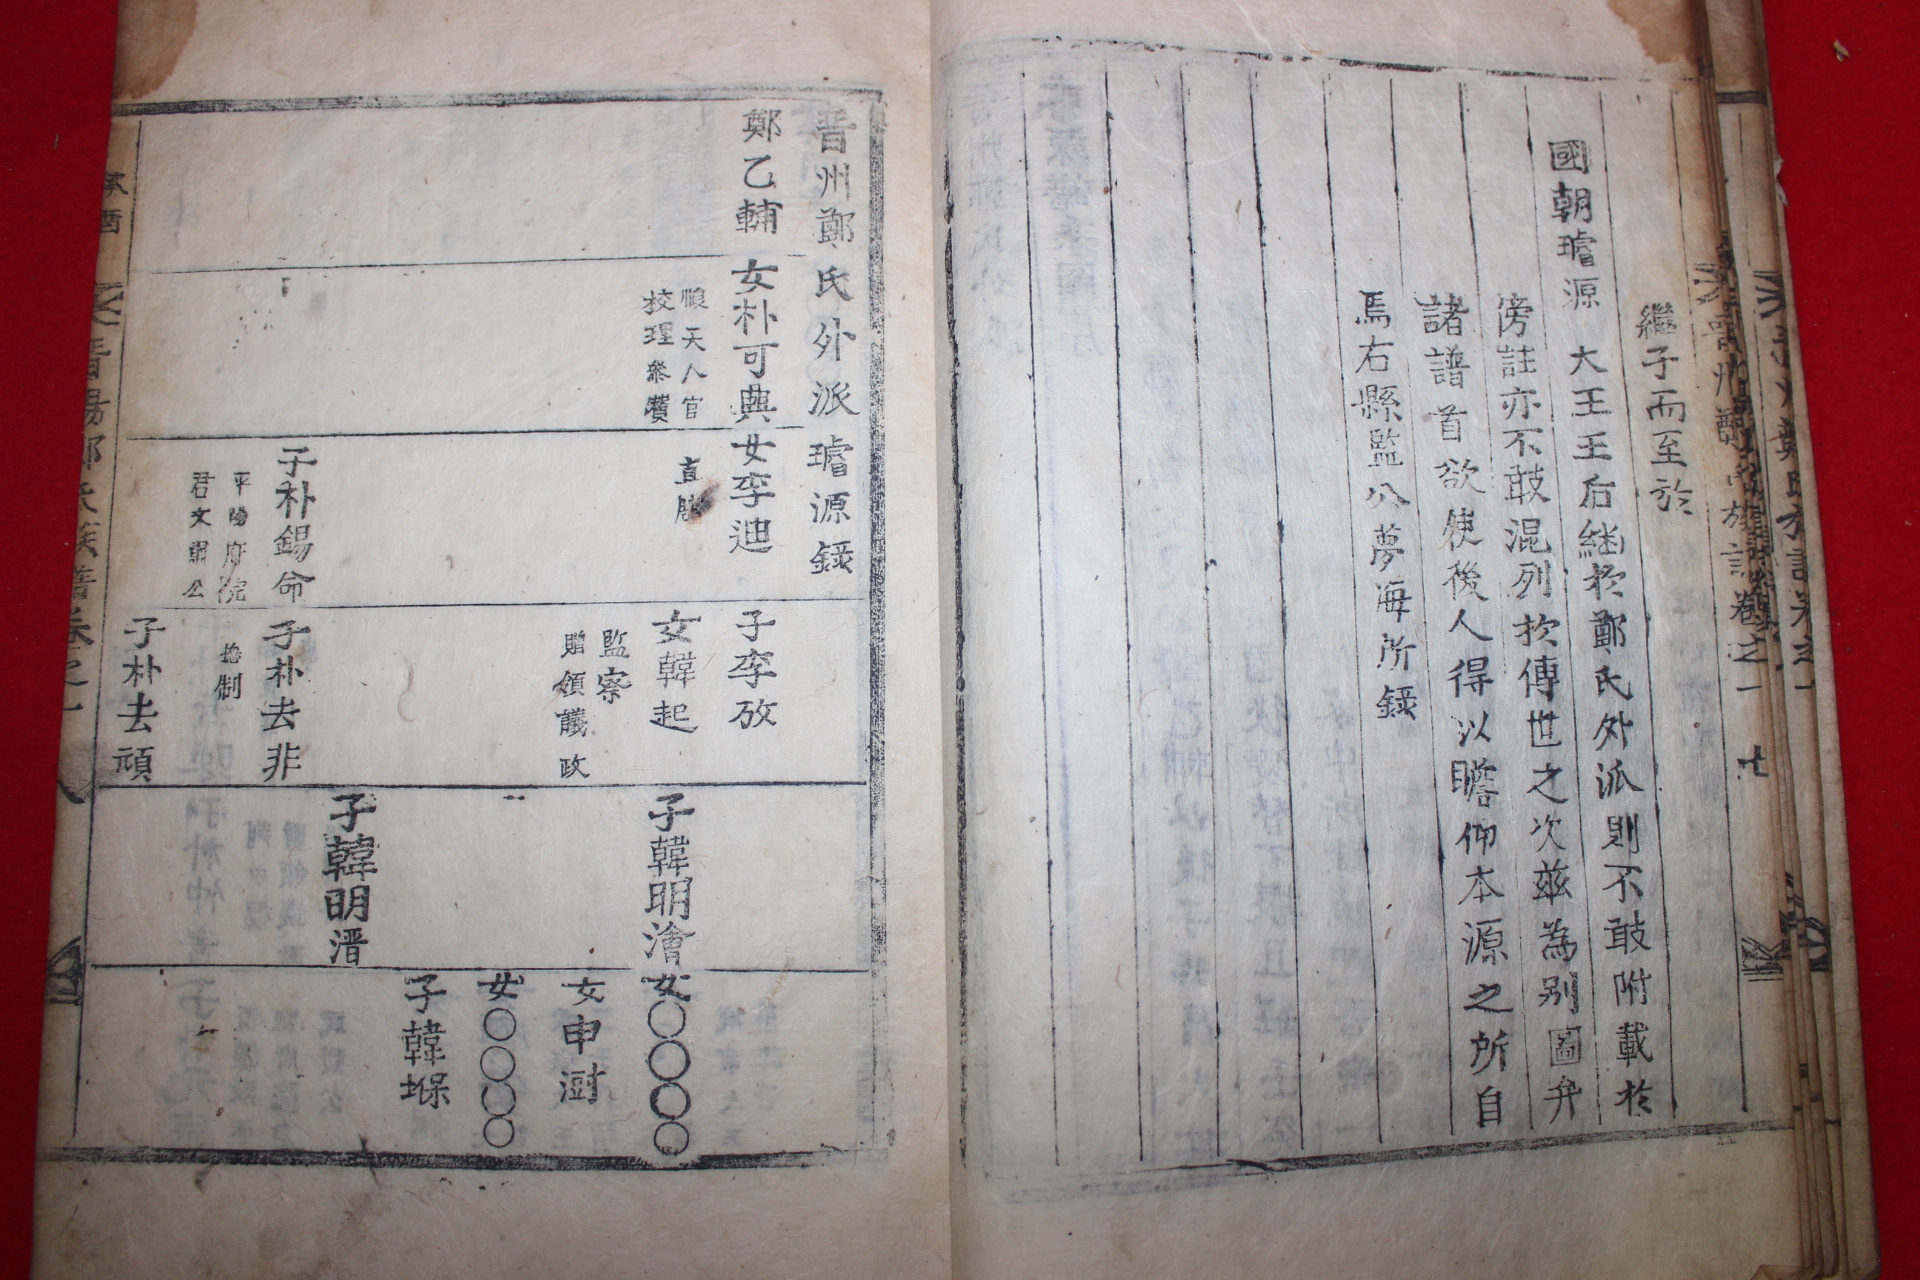 1873년(崇禎五季酉) 목활자본 진주정씨족보(晉州鄭氏族譜) 5책